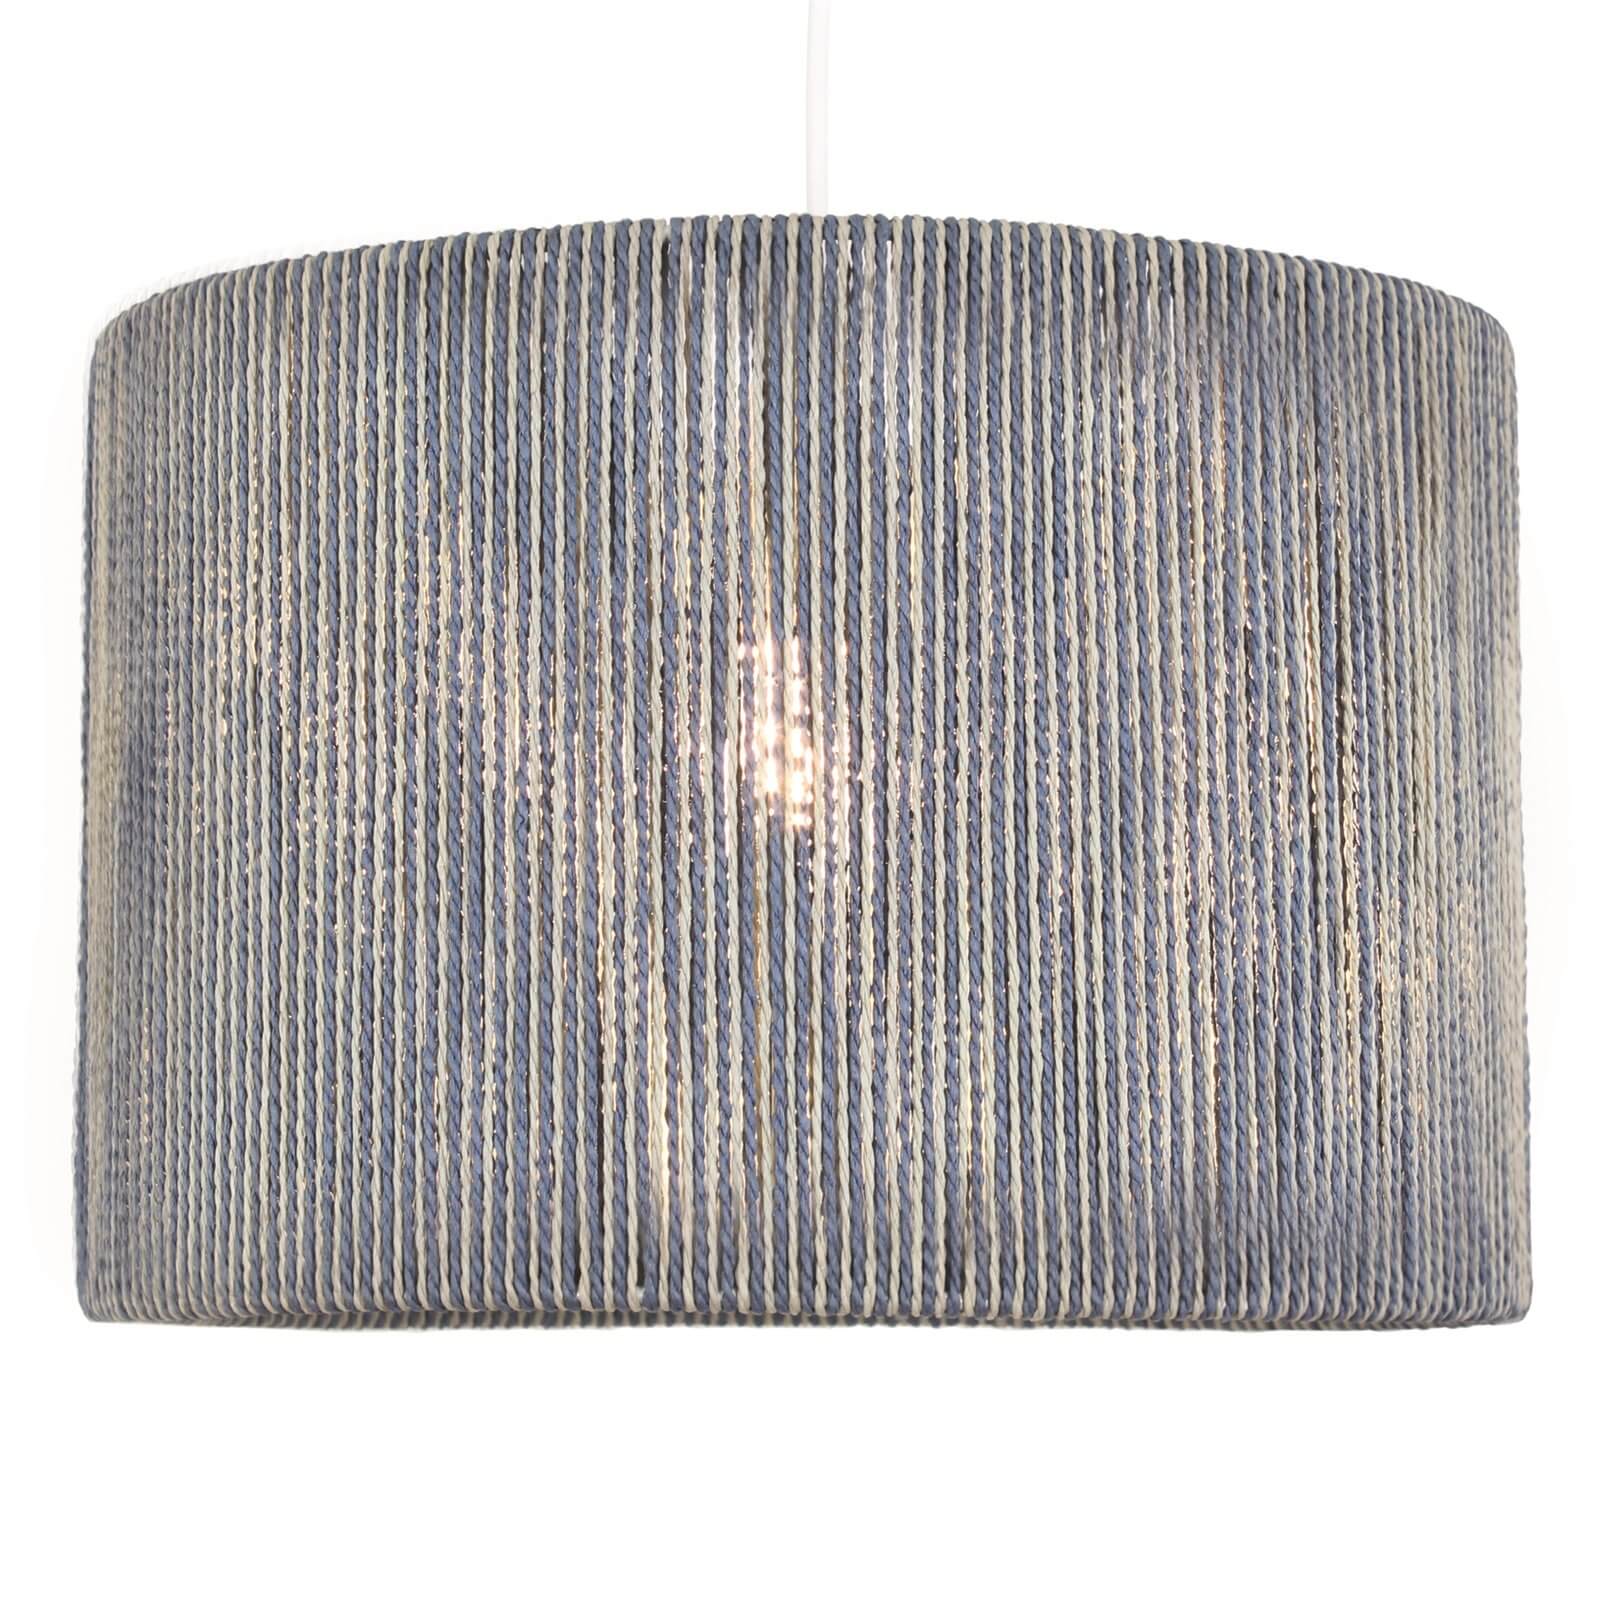 Lexi String Lamp Shade - Blue & Cream - 25cm